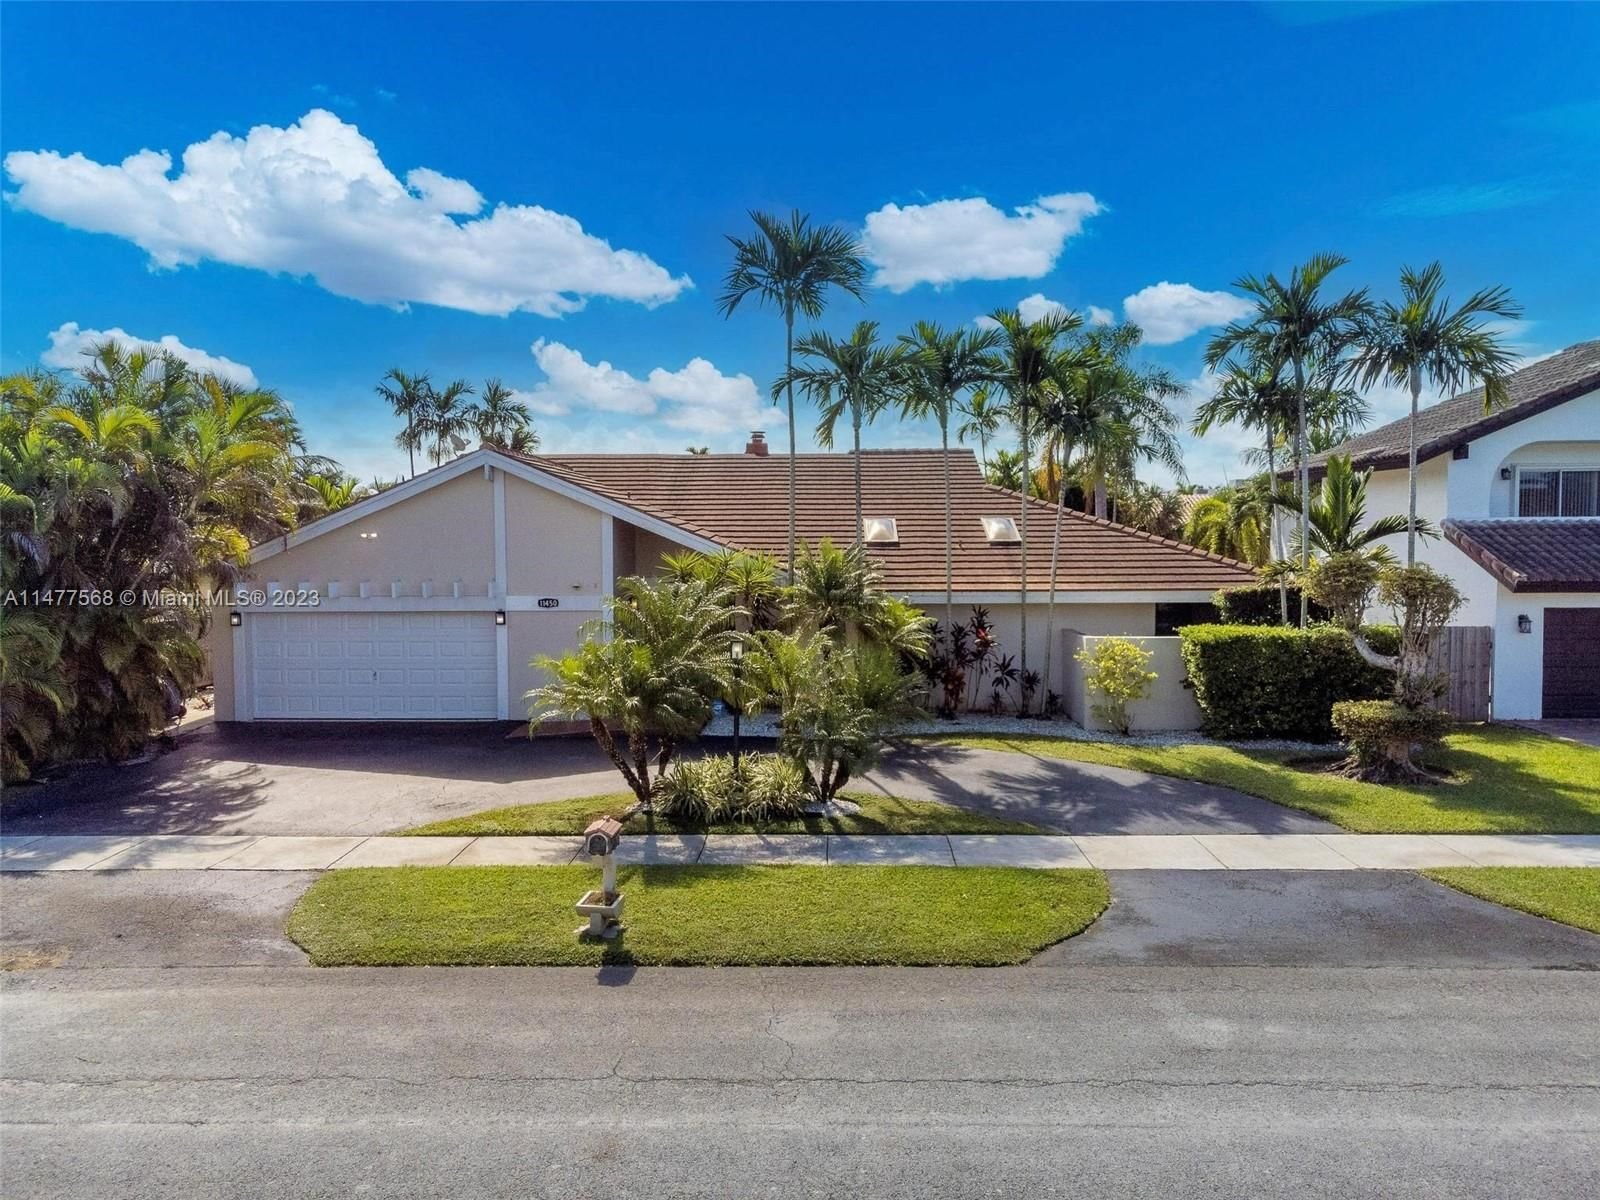 Real estate property located at 11450 101st Ter, Miami-Dade County, GLEN COVE SEC 2, Miami, FL